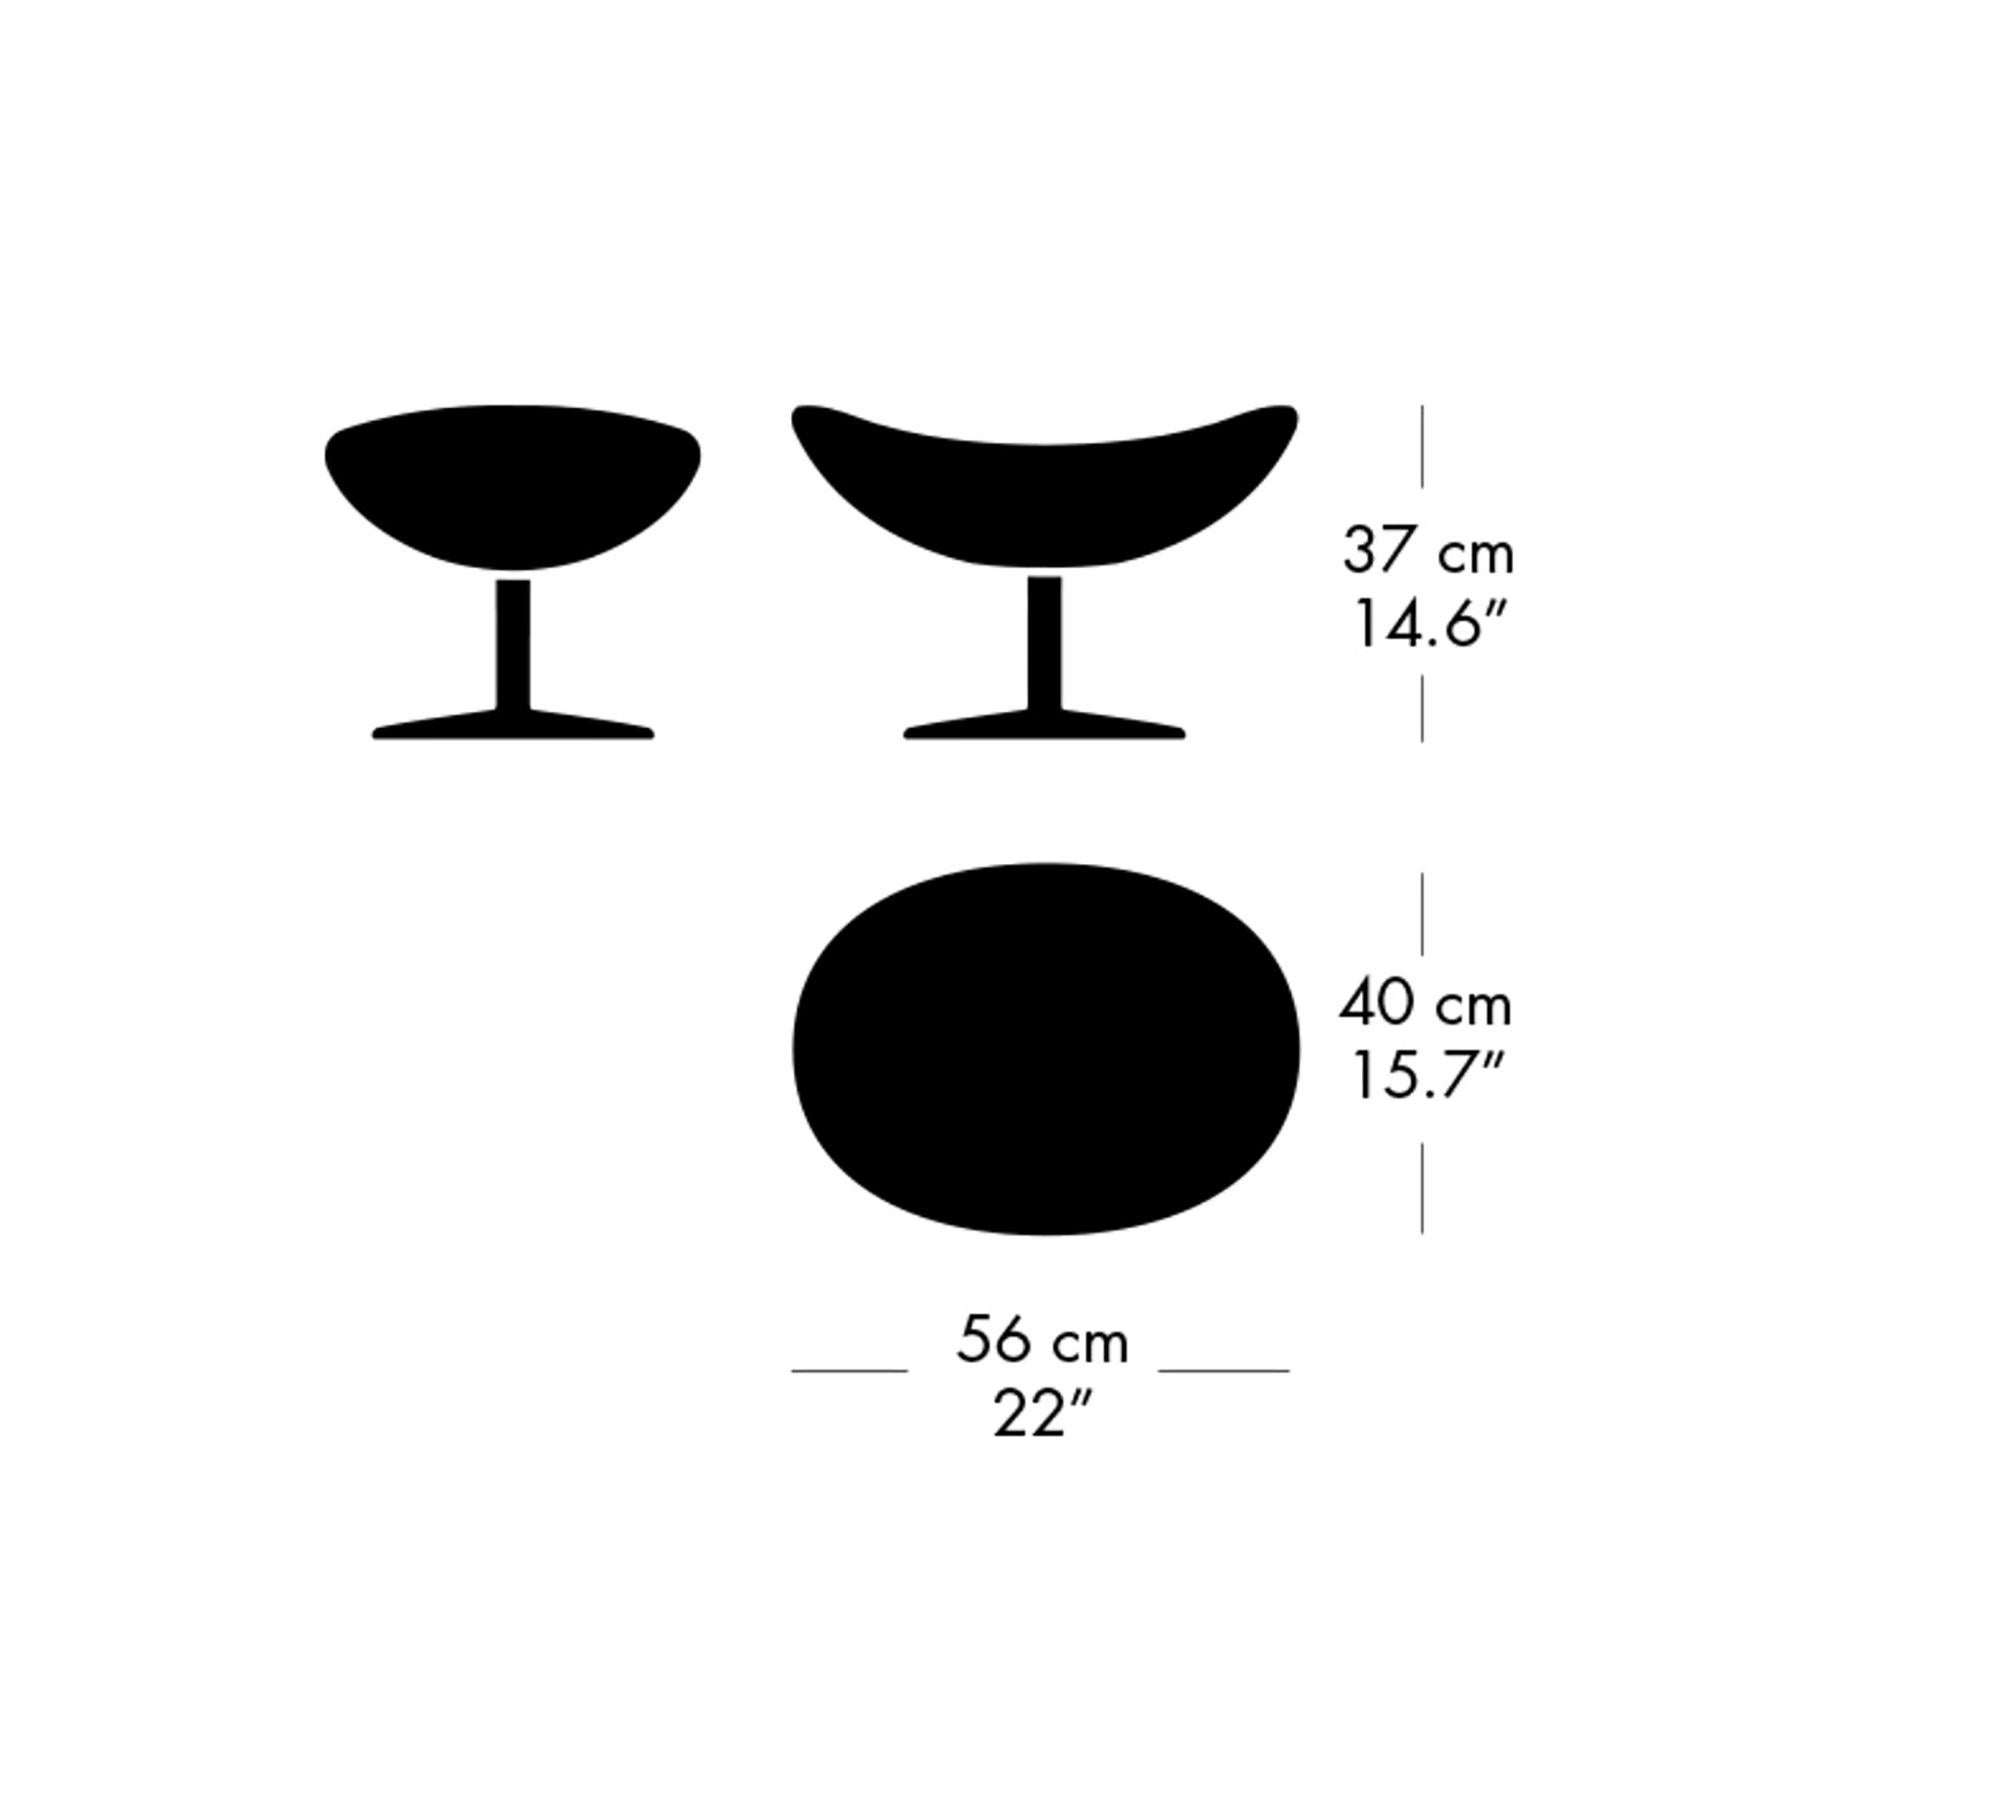 Arne Jacobsen 'Egg' Footstool for Fritz Hansen in Fabric Upholstery (Cat. 1) For Sale 7